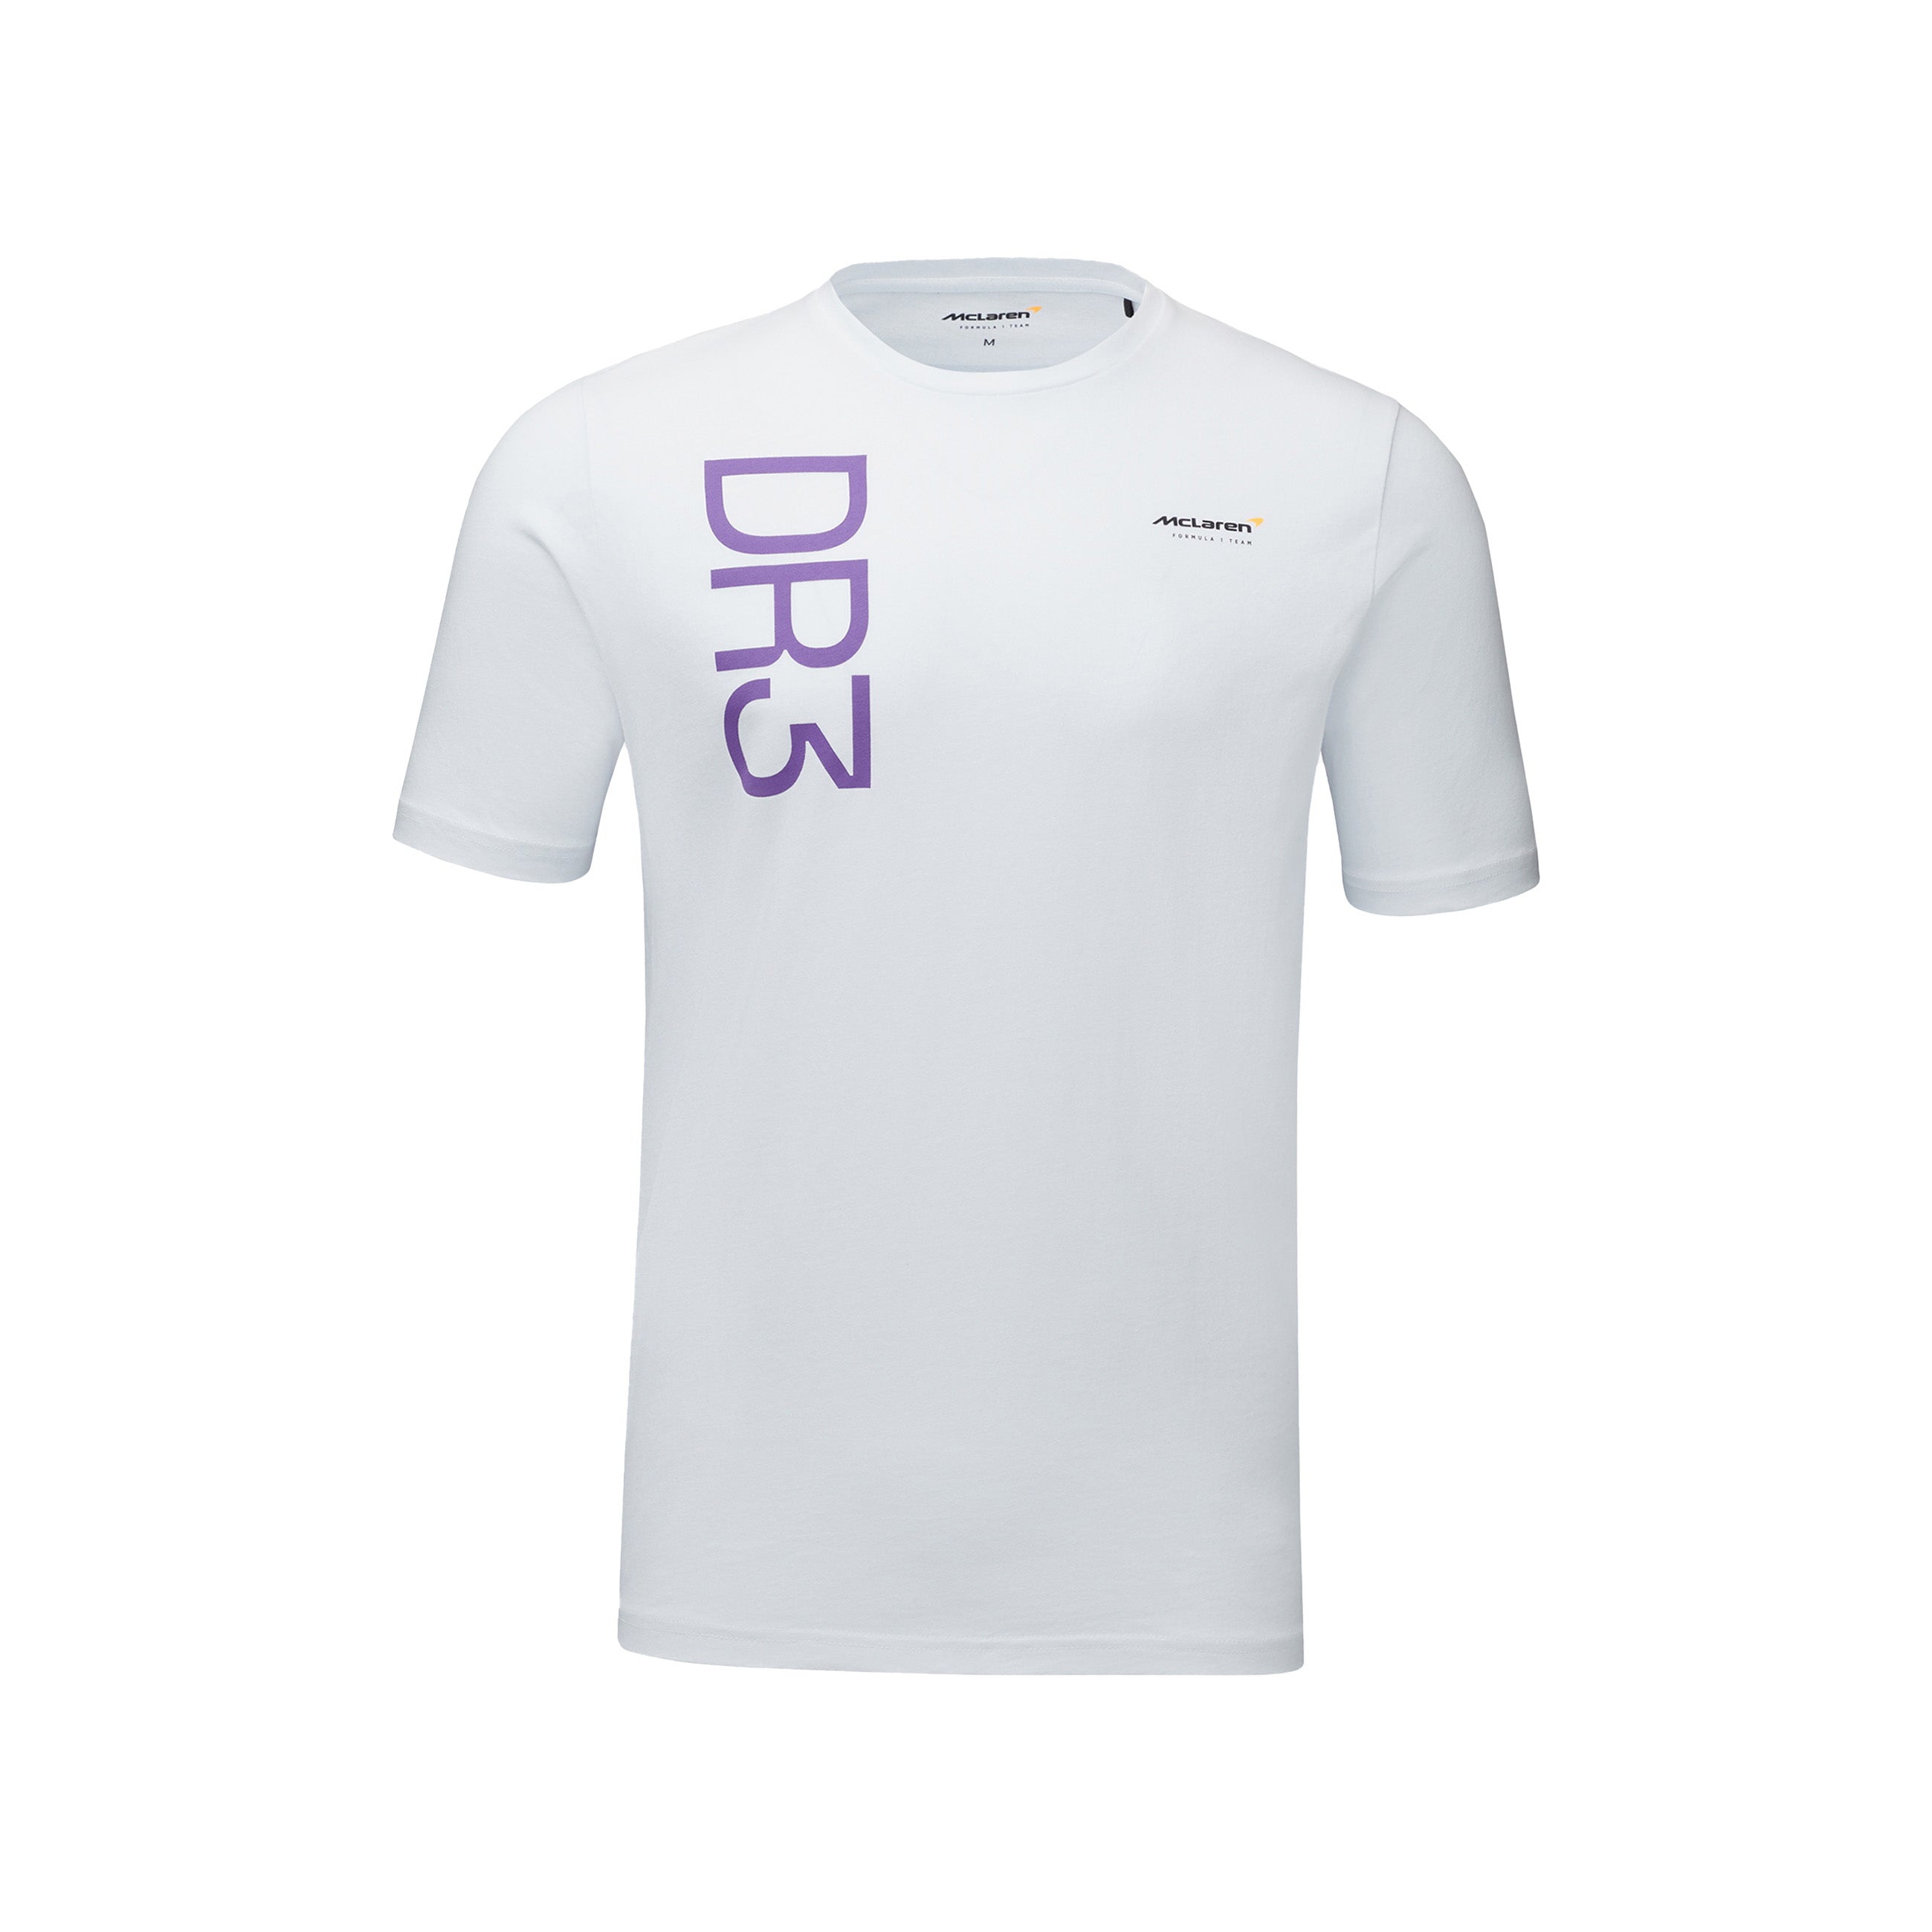 Mclaren F1 Men's Daniel Ricciardo Core T-Shirt White